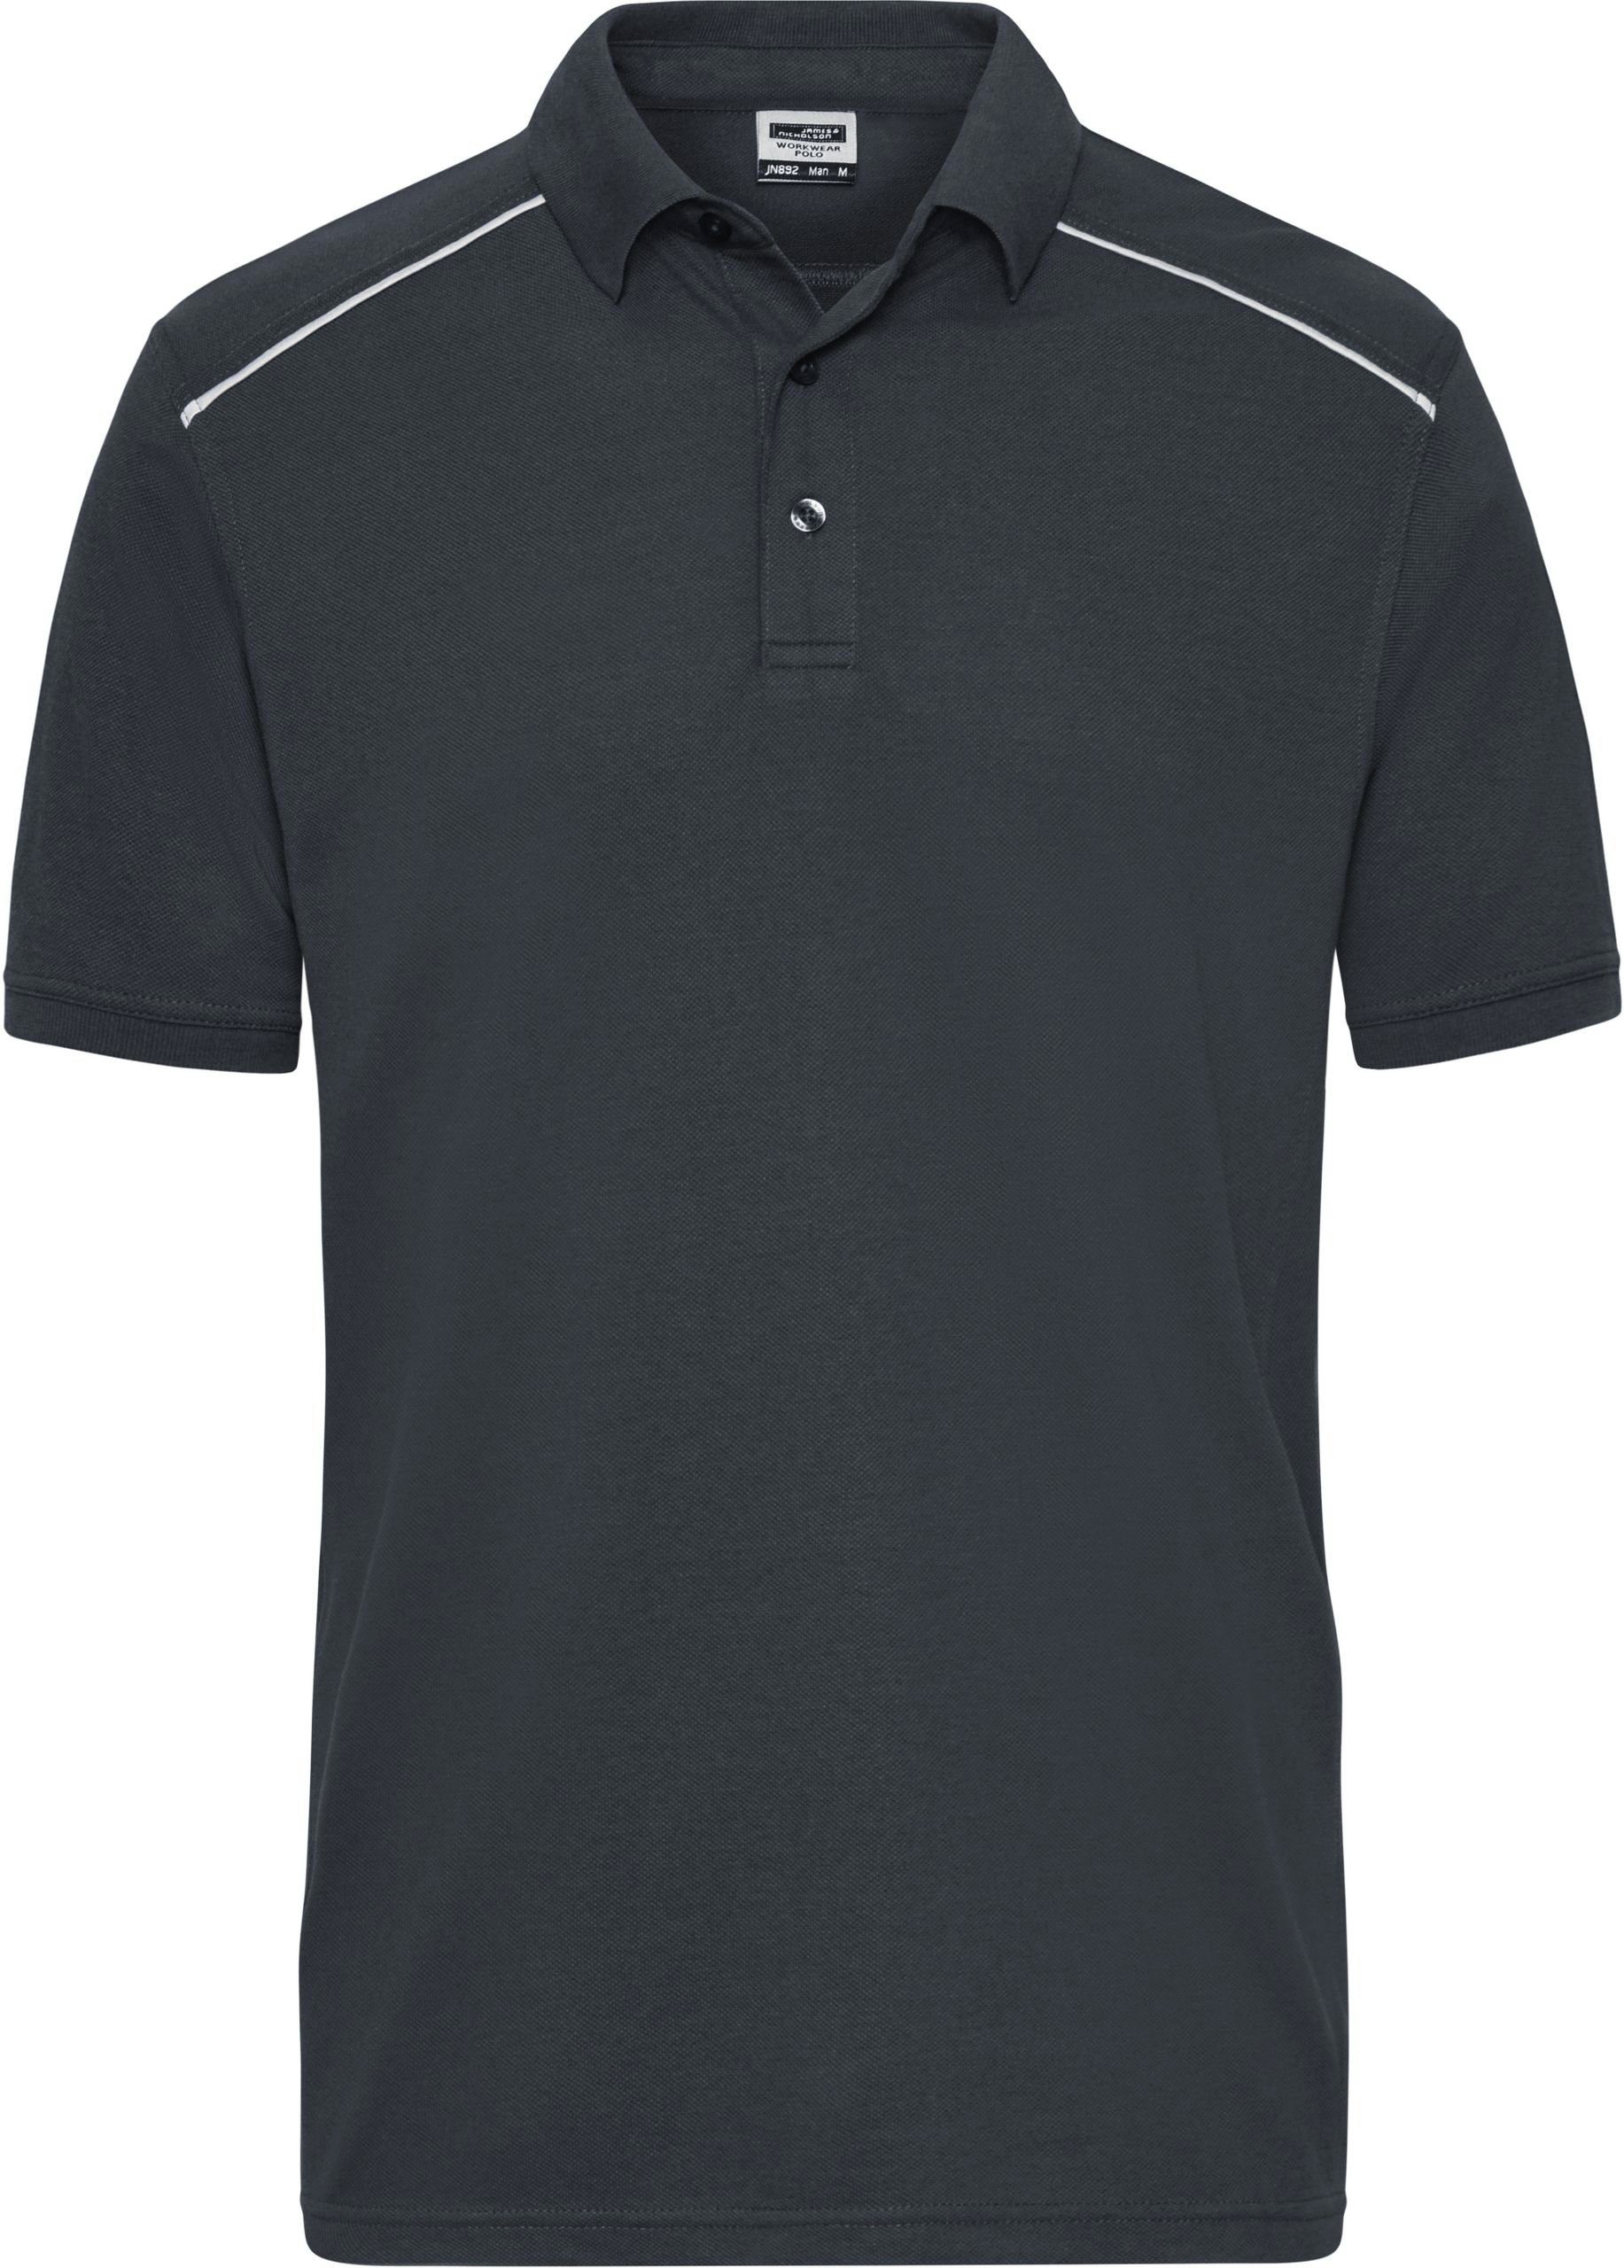 James & Nicholson Poloshirt Workwear Polo -Solid- FaS50892 auch in Übergrößen Carbon